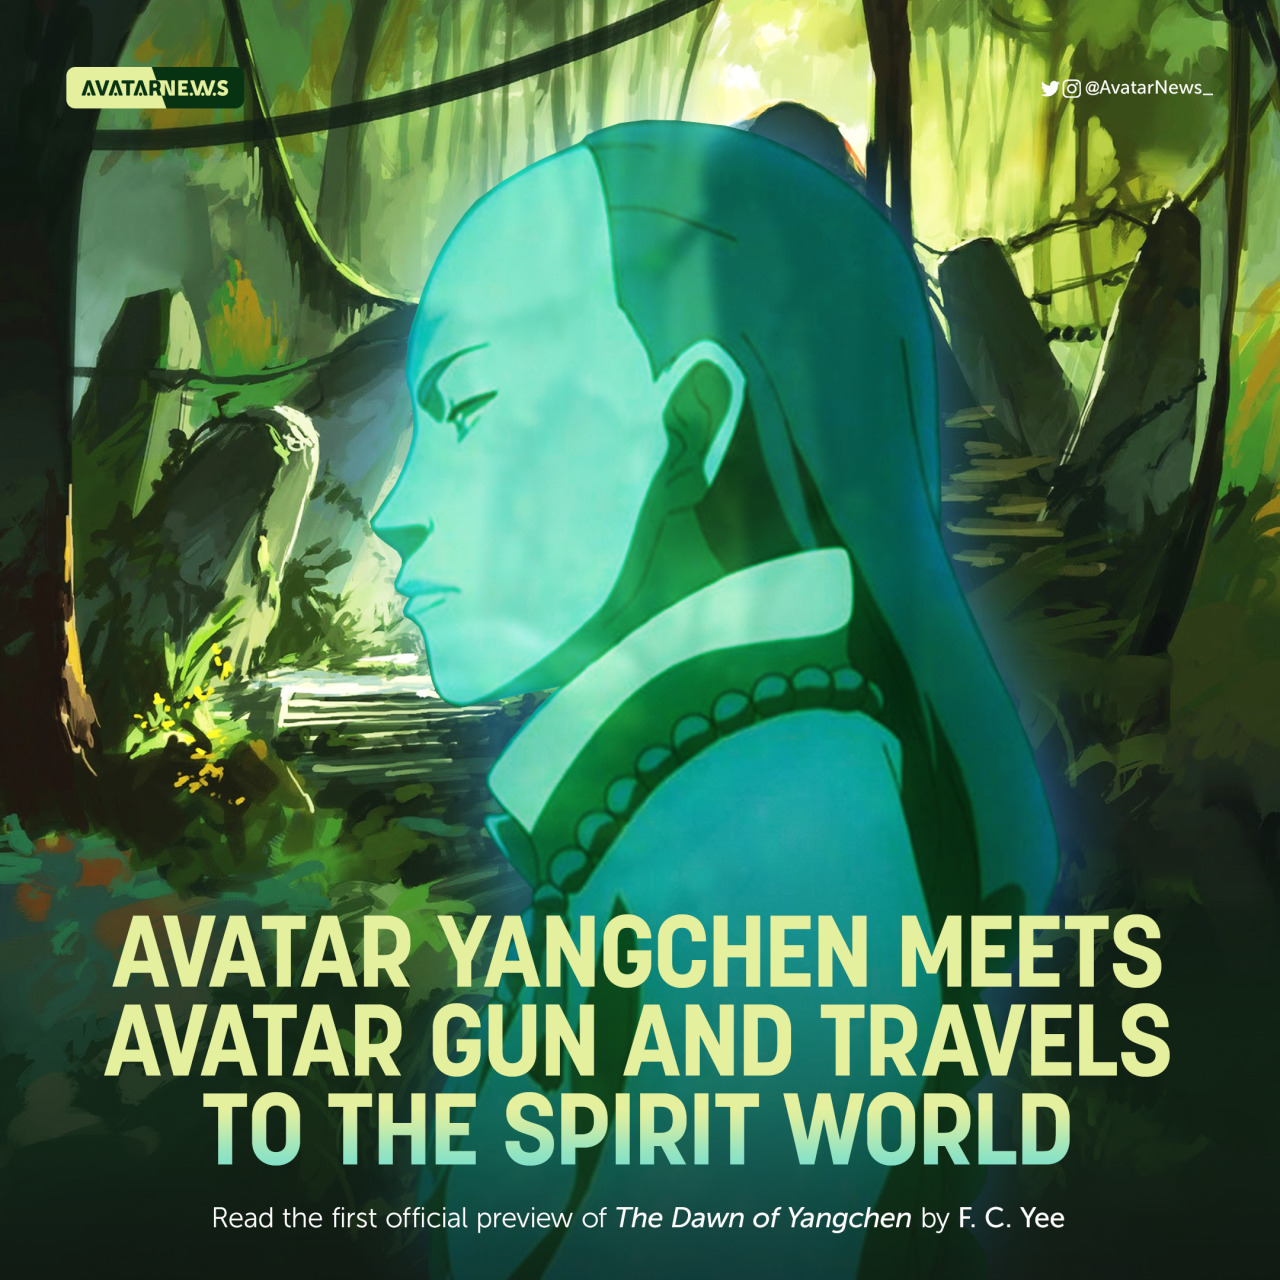 Tin tức về Yangchen trong phim Avatar đang ngày càng thu hút sự chú ý của các fan. Hãy xem hình ảnh liên quan để hòa mình vào một cộng đồng đam mê các nhân vật và di sản của phim. Trong thế giới đầy sáng tạo của Avatar, sự tò mò và kích thích không bao giờ có hồi kết.